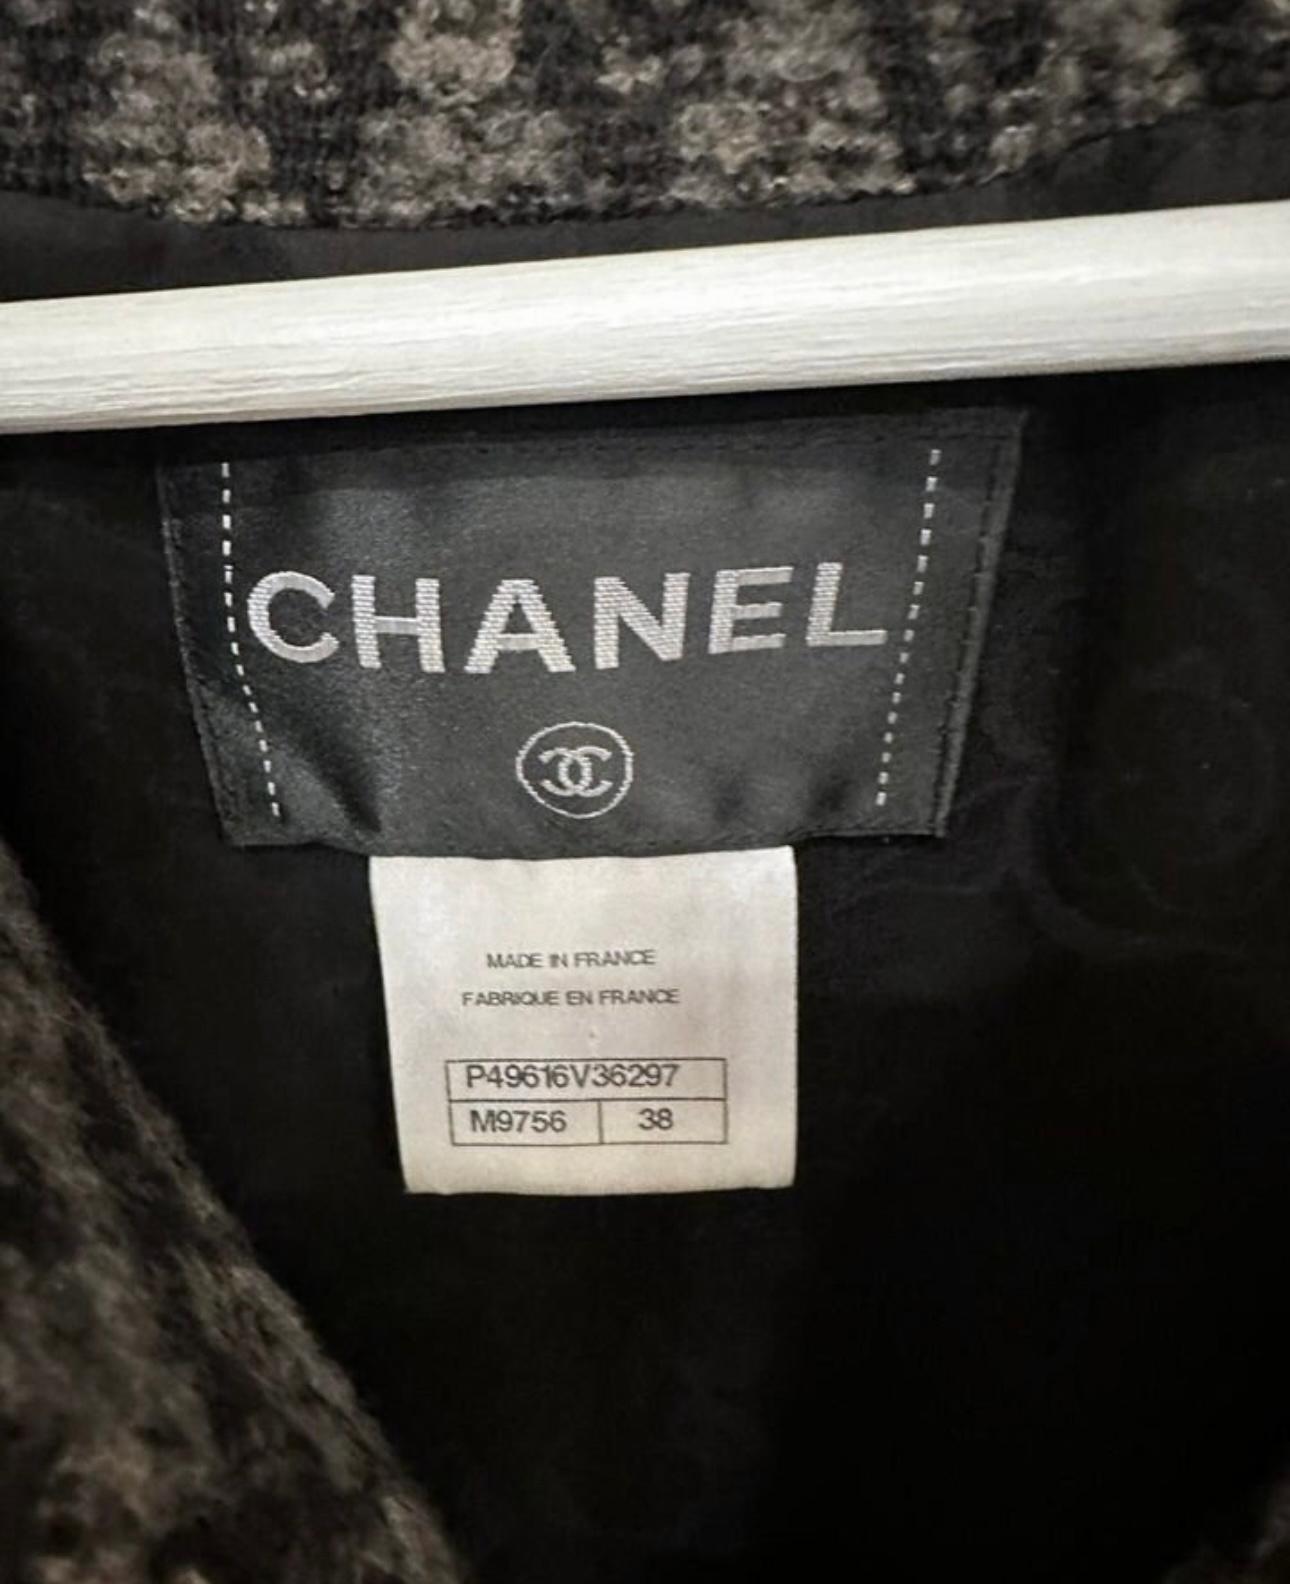 Veste Chanel Paris / Dallas CC boutons en tweed 8K$ 6